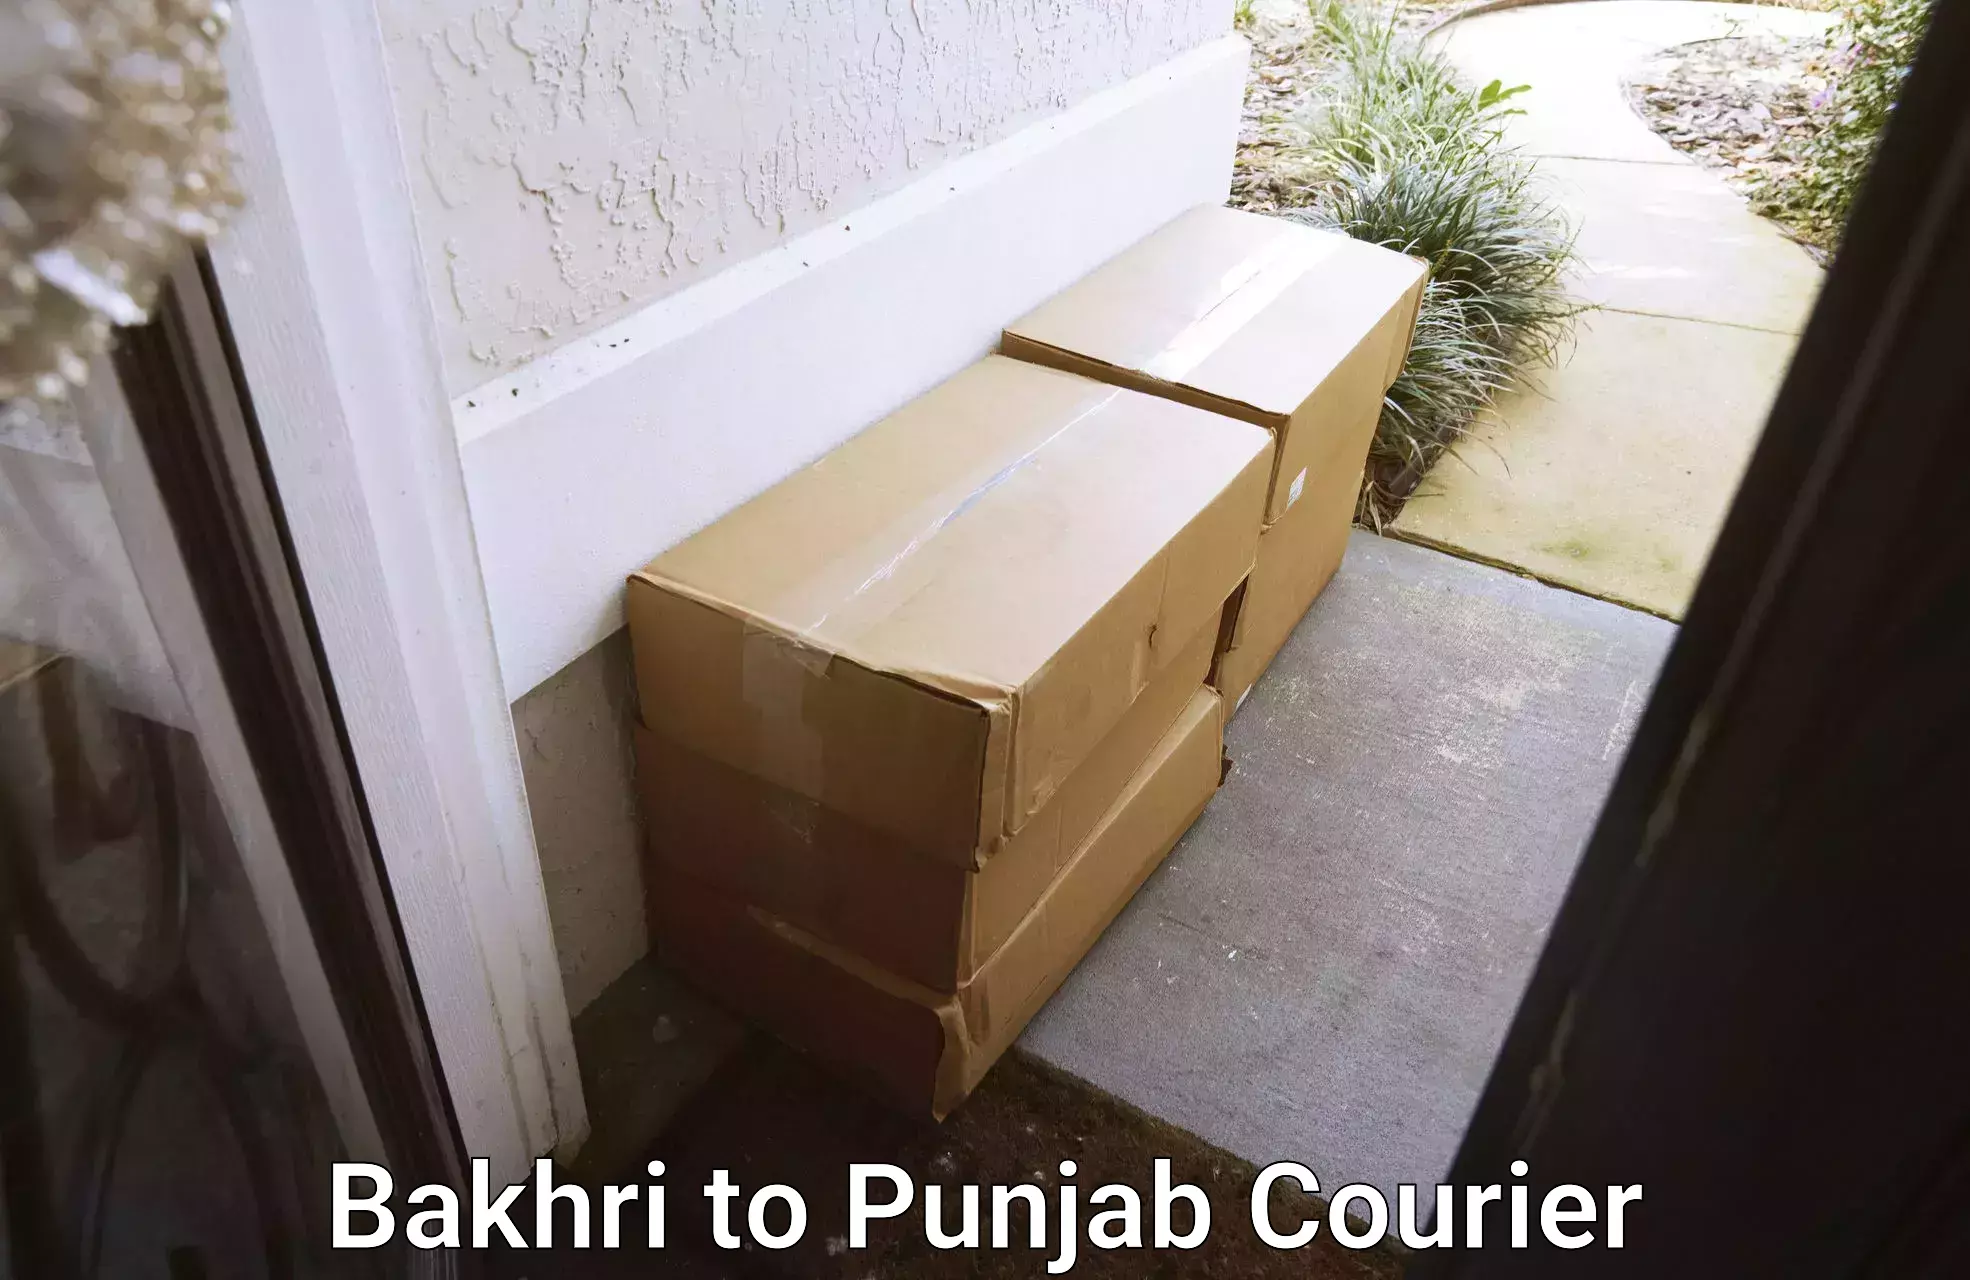 Efficient moving company Bakhri to Tarsikka